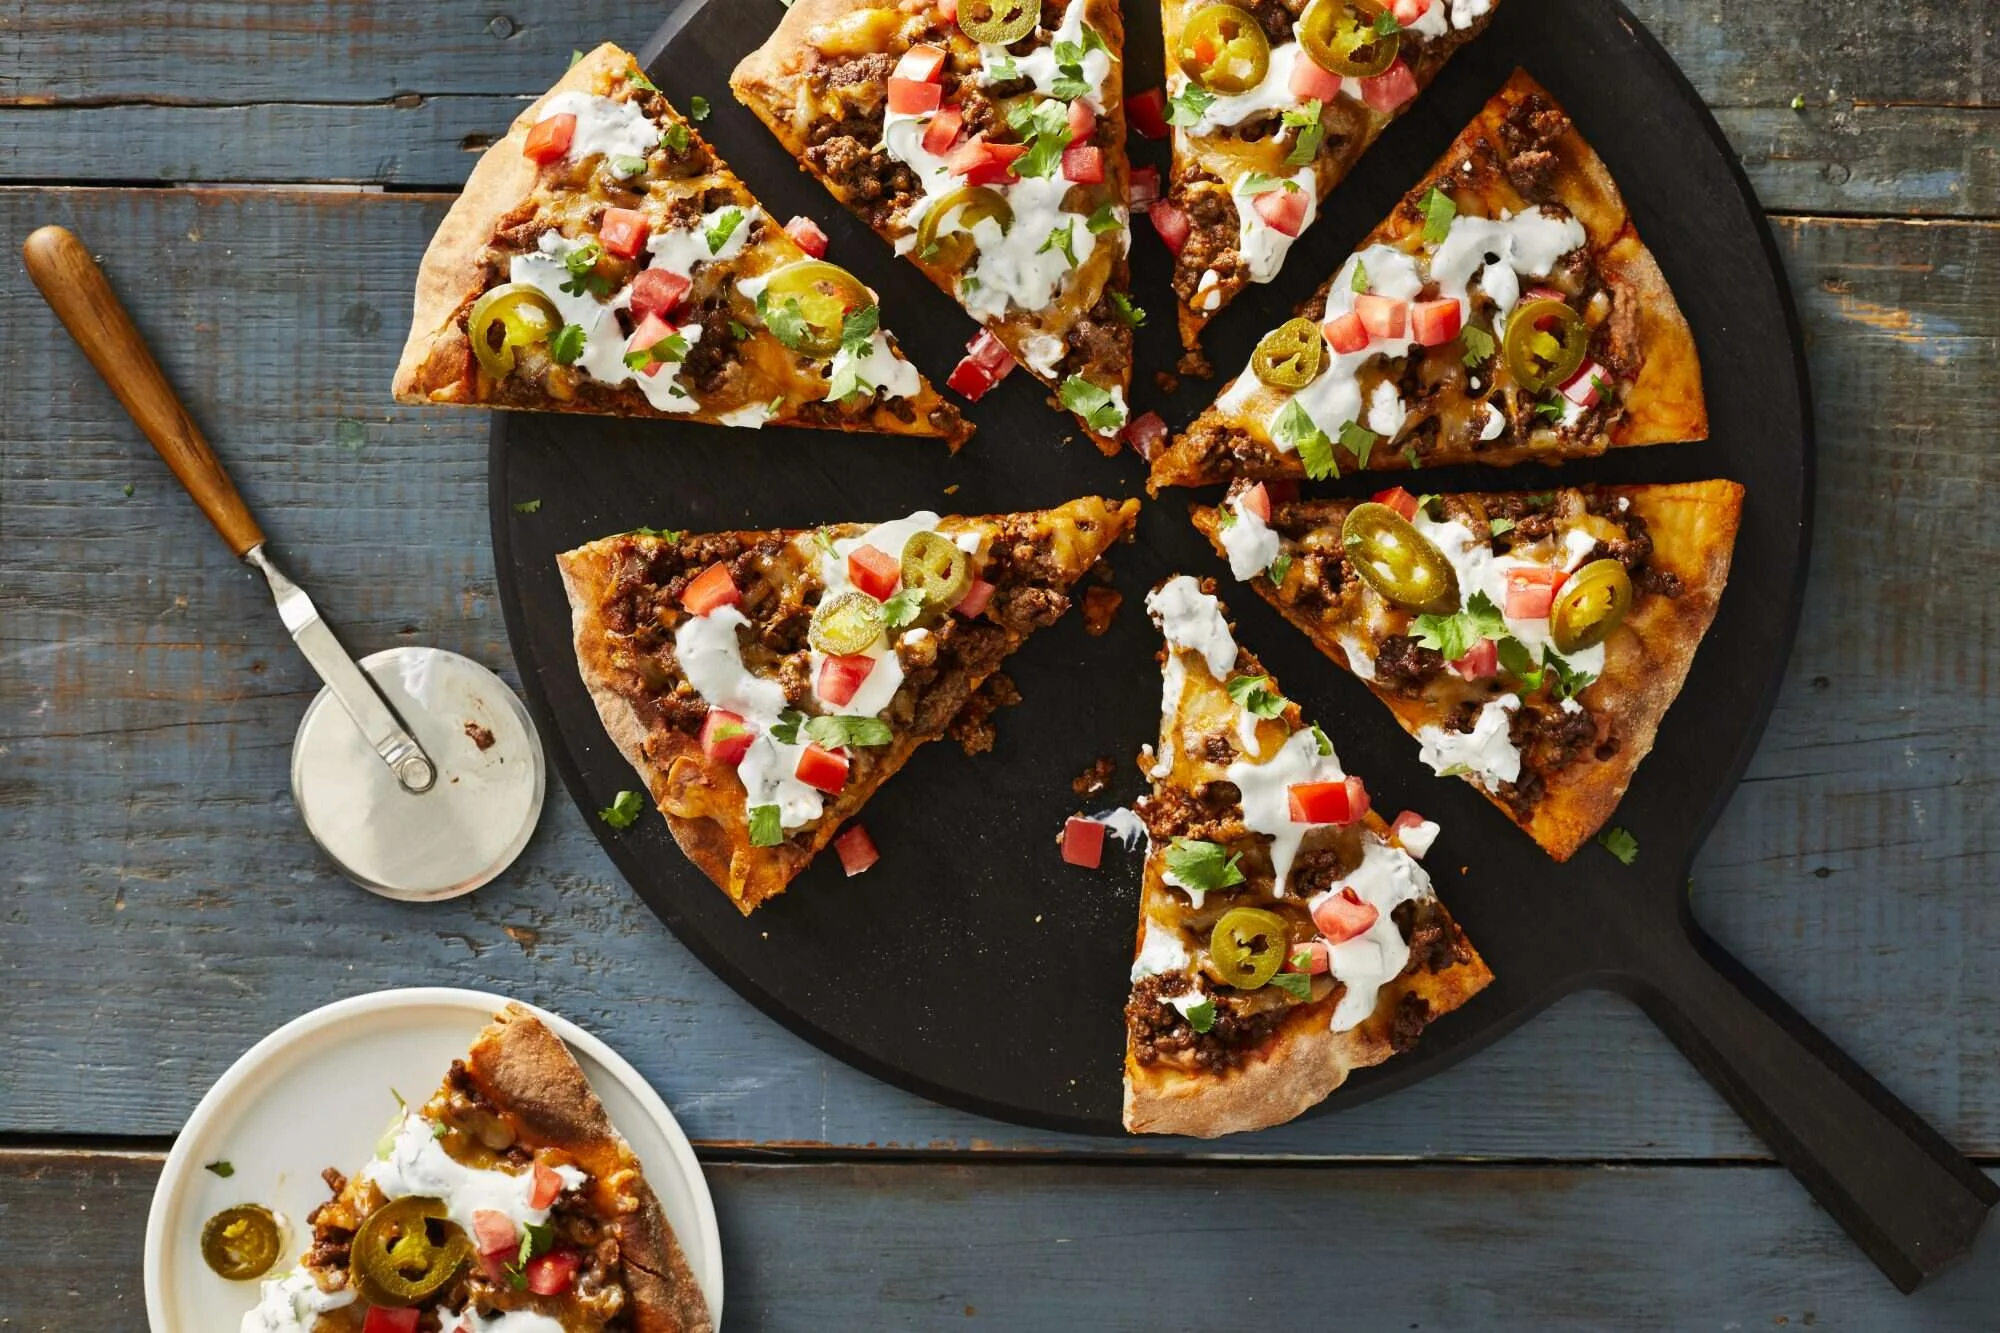 Copycat taco pizza at home